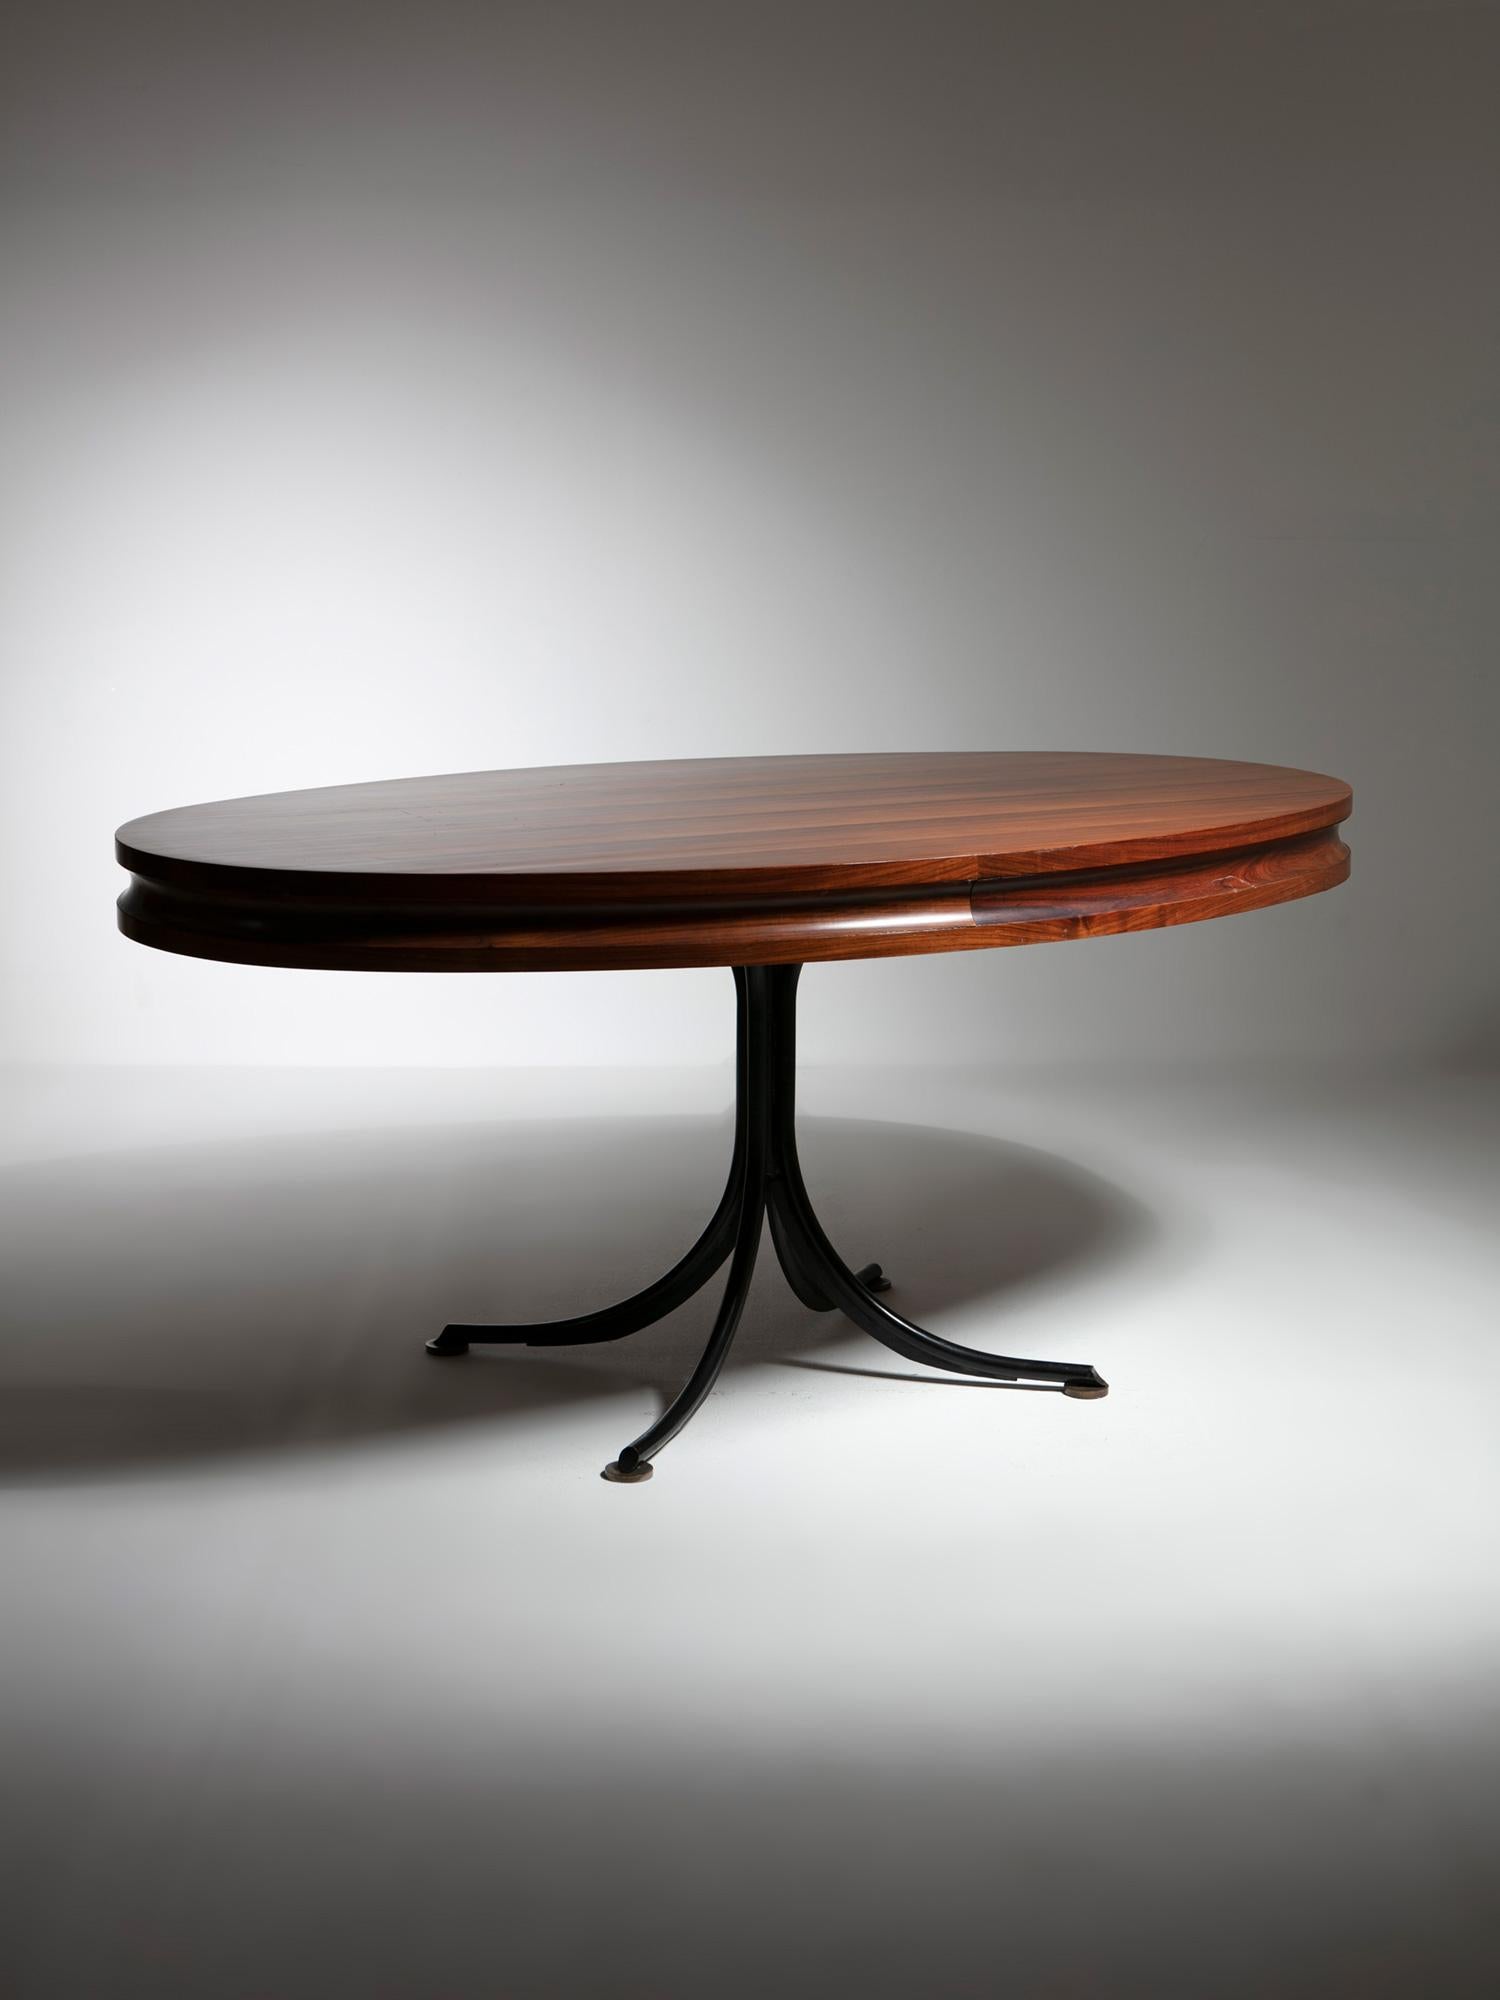 Table de salle à manger ovale en bois fabriquée sur mesure dans les années 60 par Adelmo Rascaroli.
Base en métal noir avec pieds en laiton et plateau en bois.